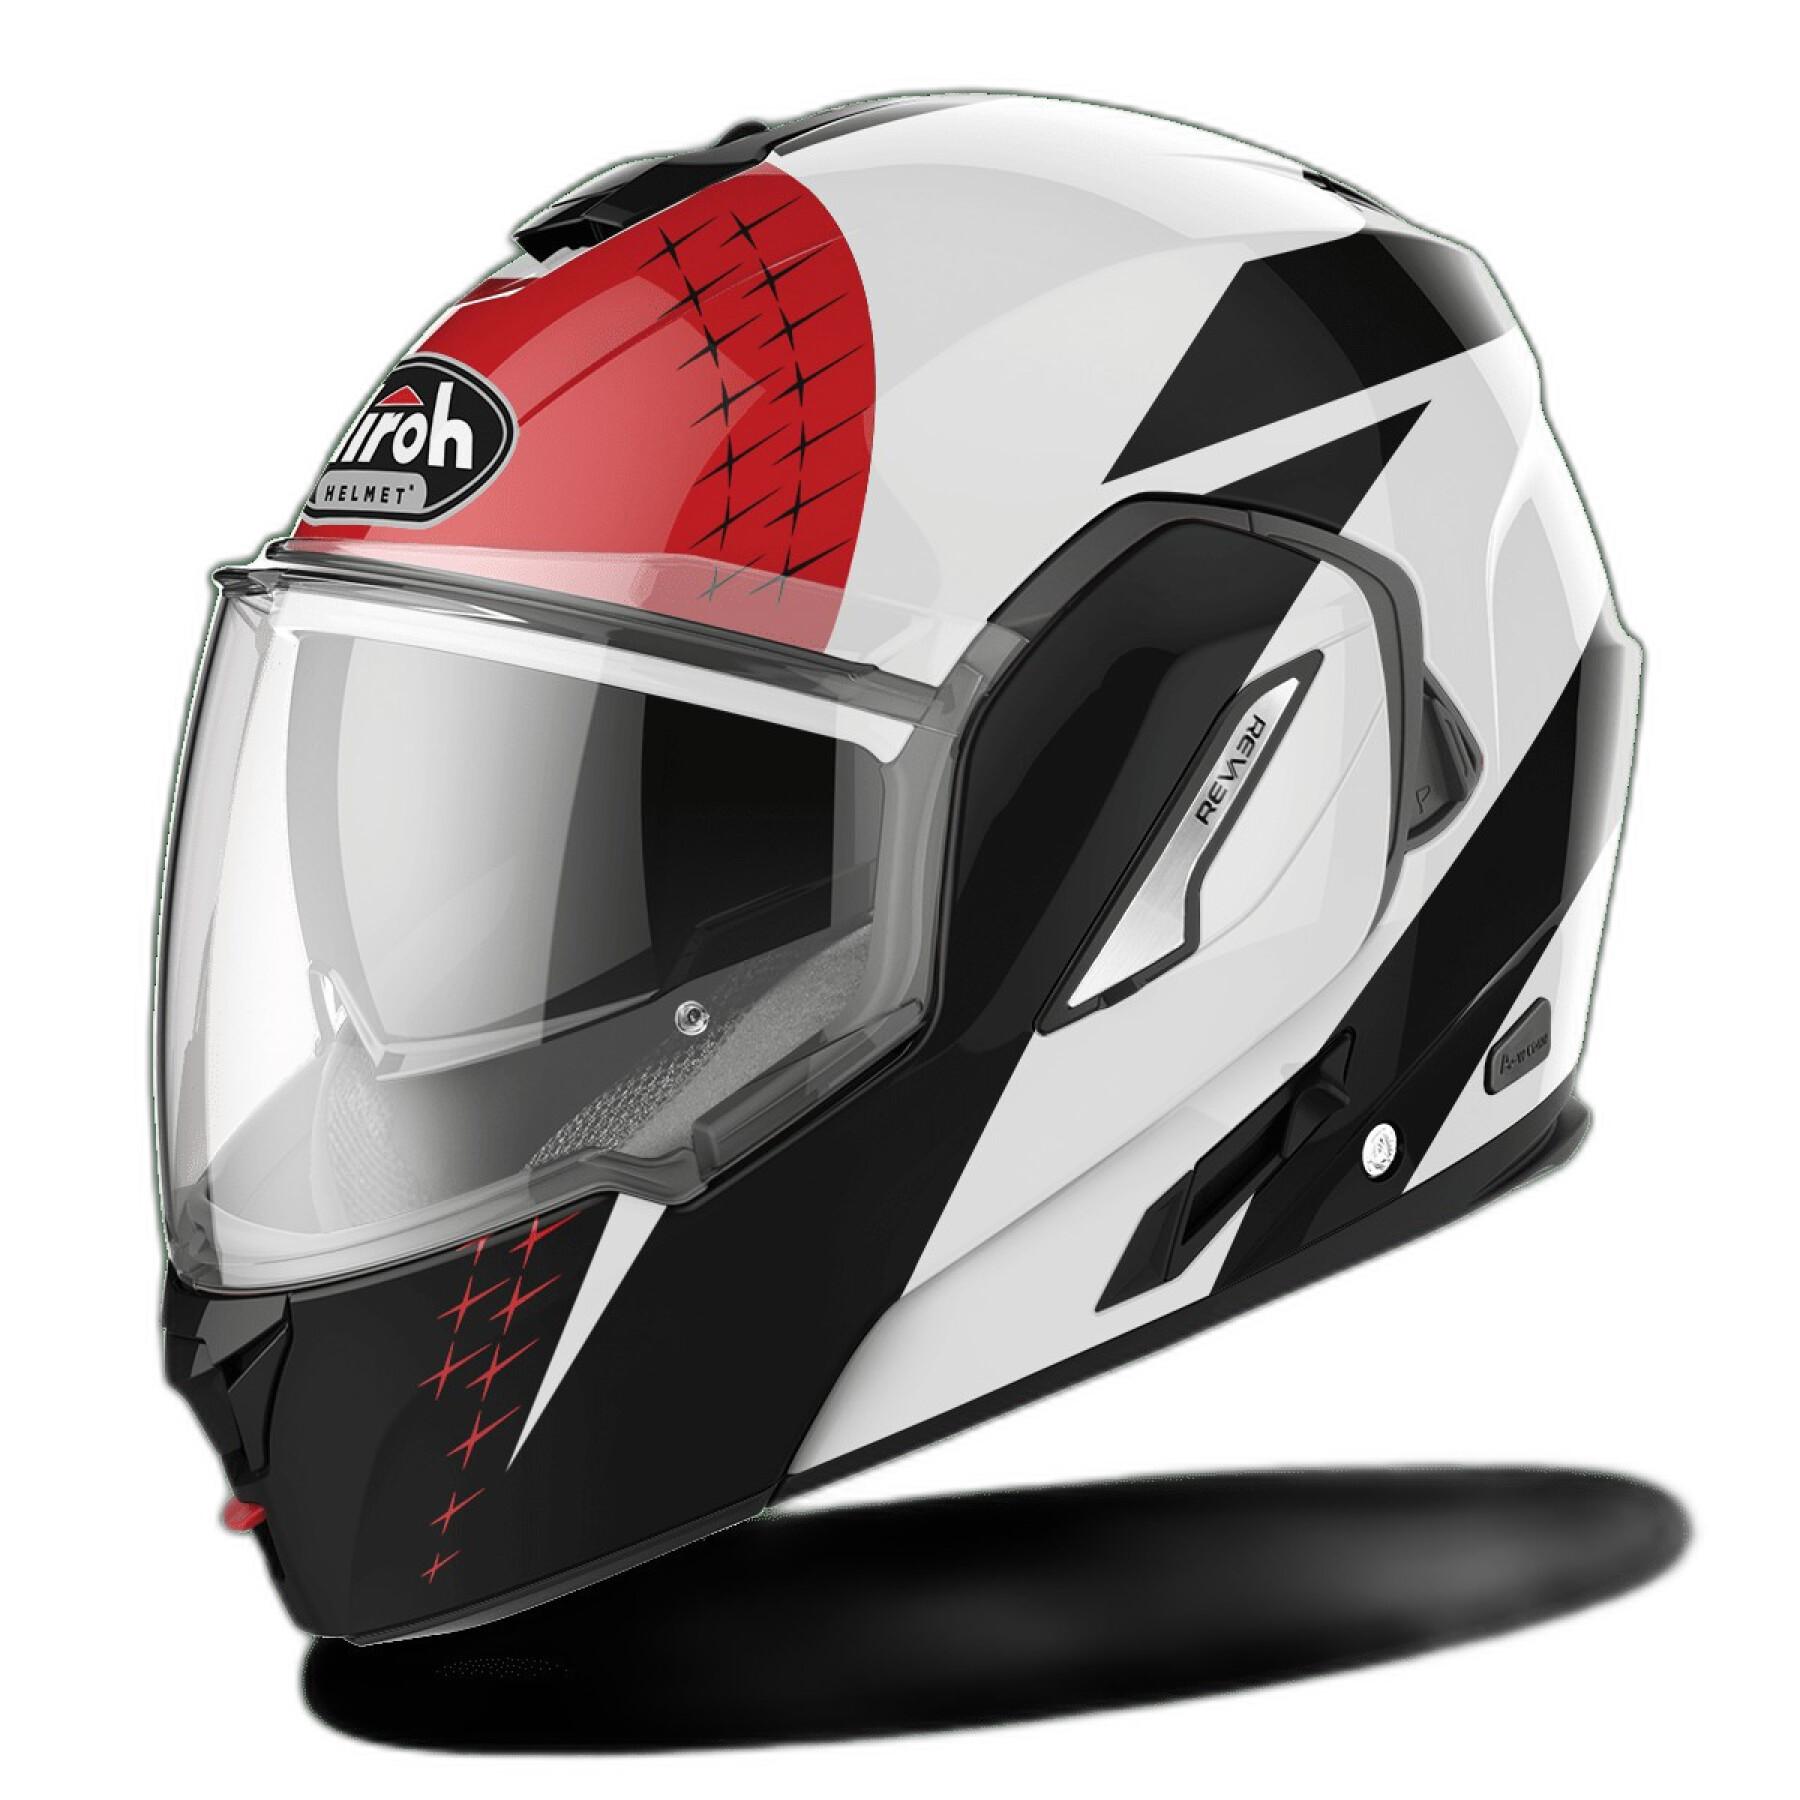 Modular motorcycle helmet Airoh Rev 19 Leaden